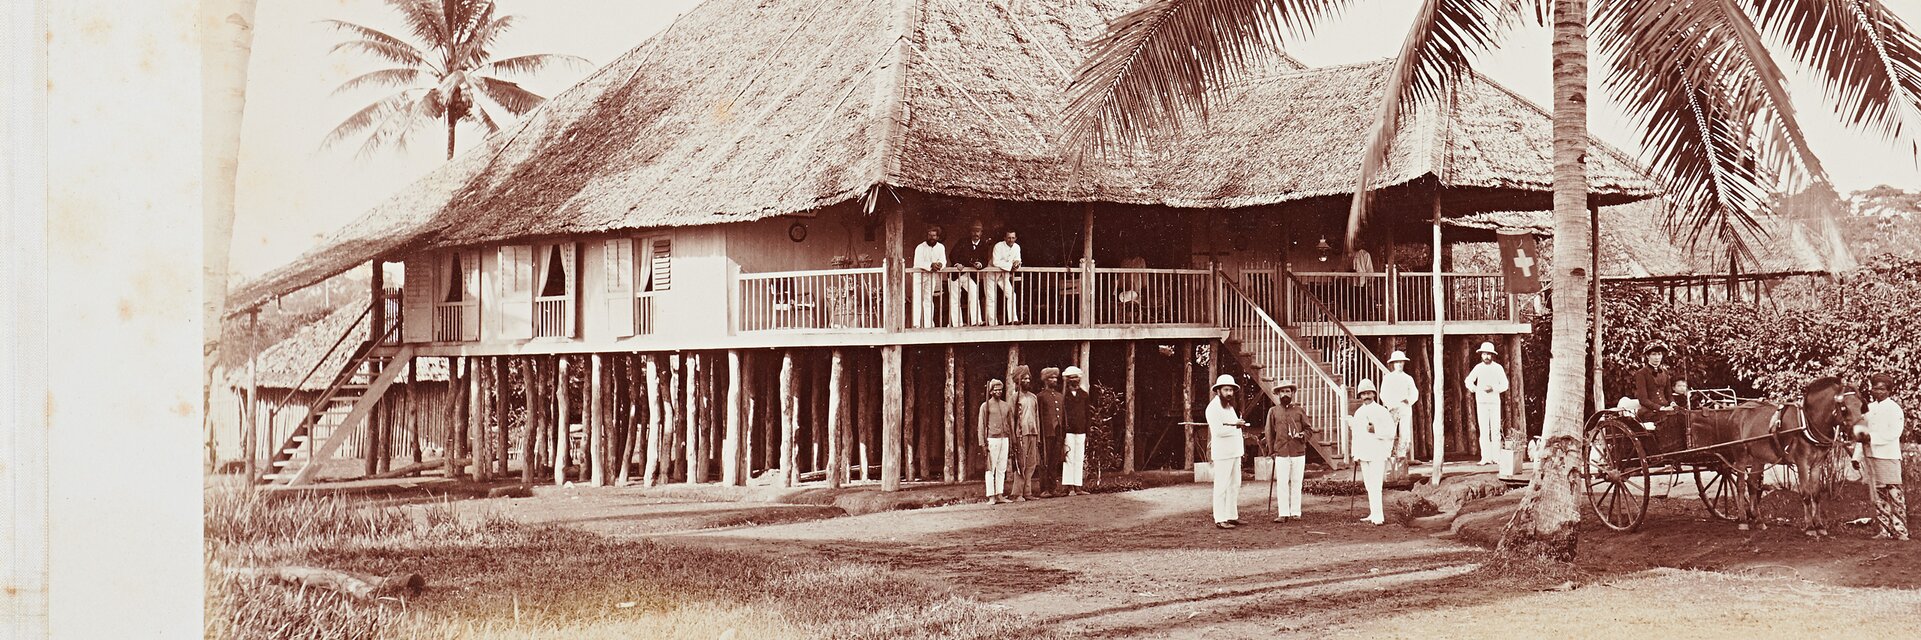 Ein Appenzeller in der Fremde: Das "Manager House" auf dem "Maryland Estate" in Deli, 1885.